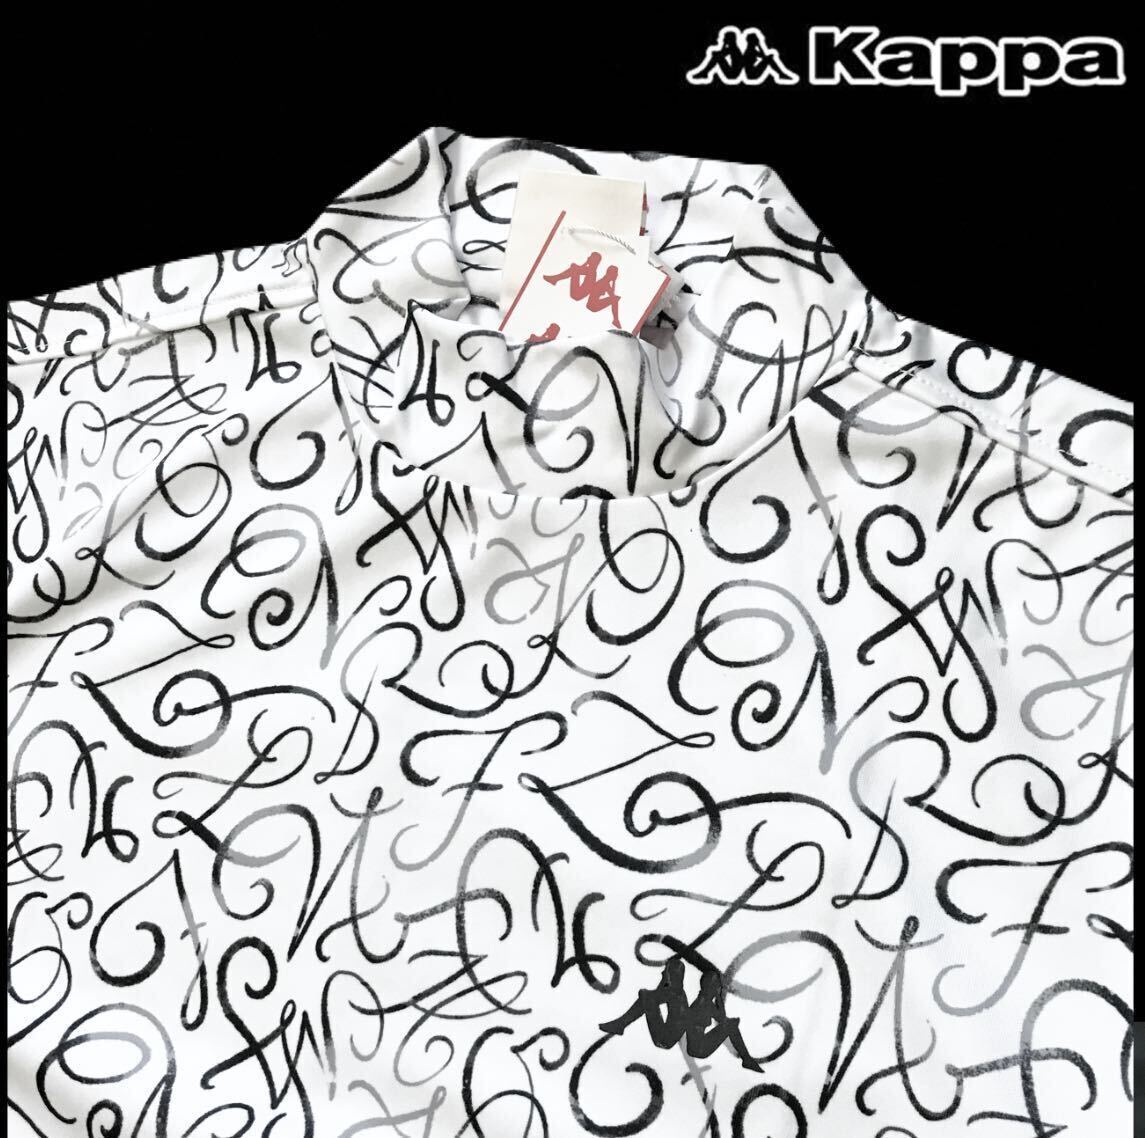 ^B285 новый товар [ мужской L] общий рисунок белый серый [Kappa GOLF] Kappa Golf . пот скорость . антибактериальный дезодорация в целом дизайн стрейч mok шея рубашка с коротким рукавом 